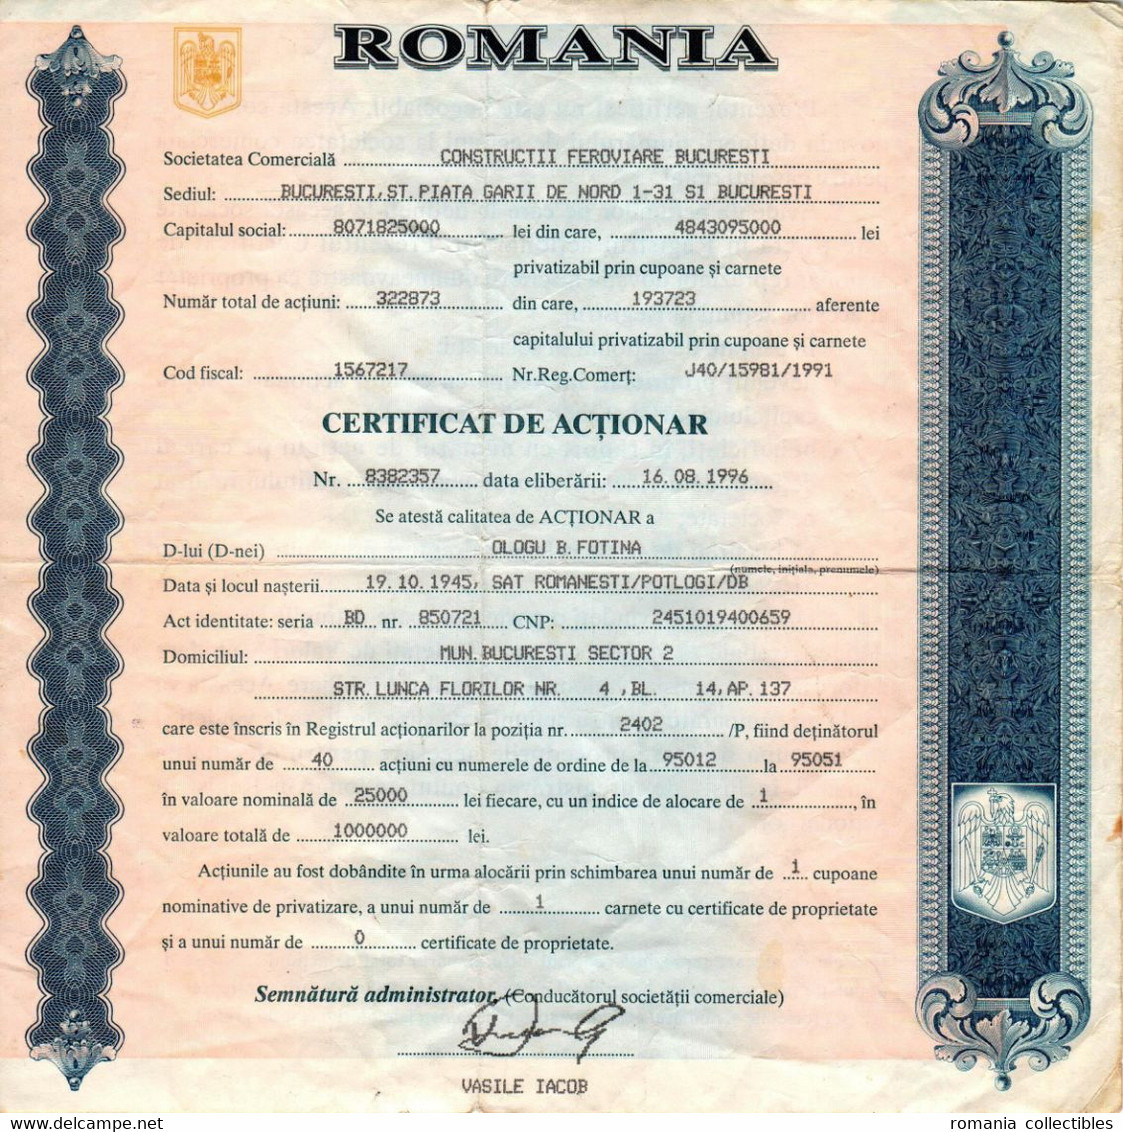 Romania, 1996, "CONSTRUCTII FEROVIARE BUCURESTI" Company - Vintage Shareholder Certificate / Bond - A - C